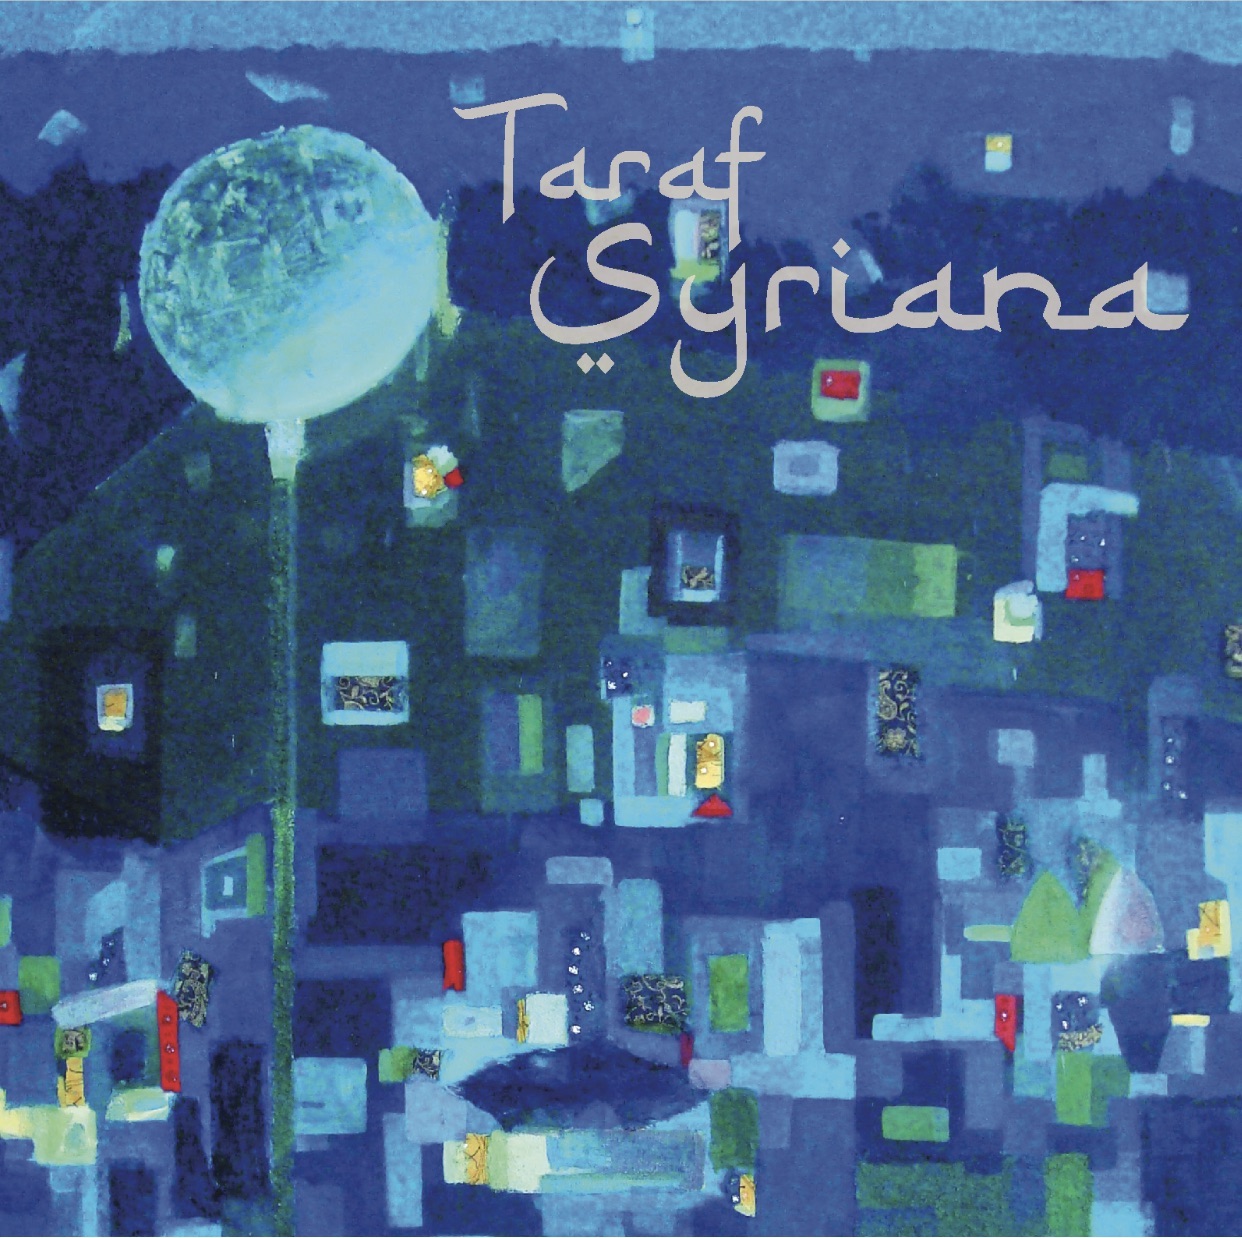 Cover of Taraf Syriana's "Taraf Syriana" (source: www.tarafsyriana.com/)